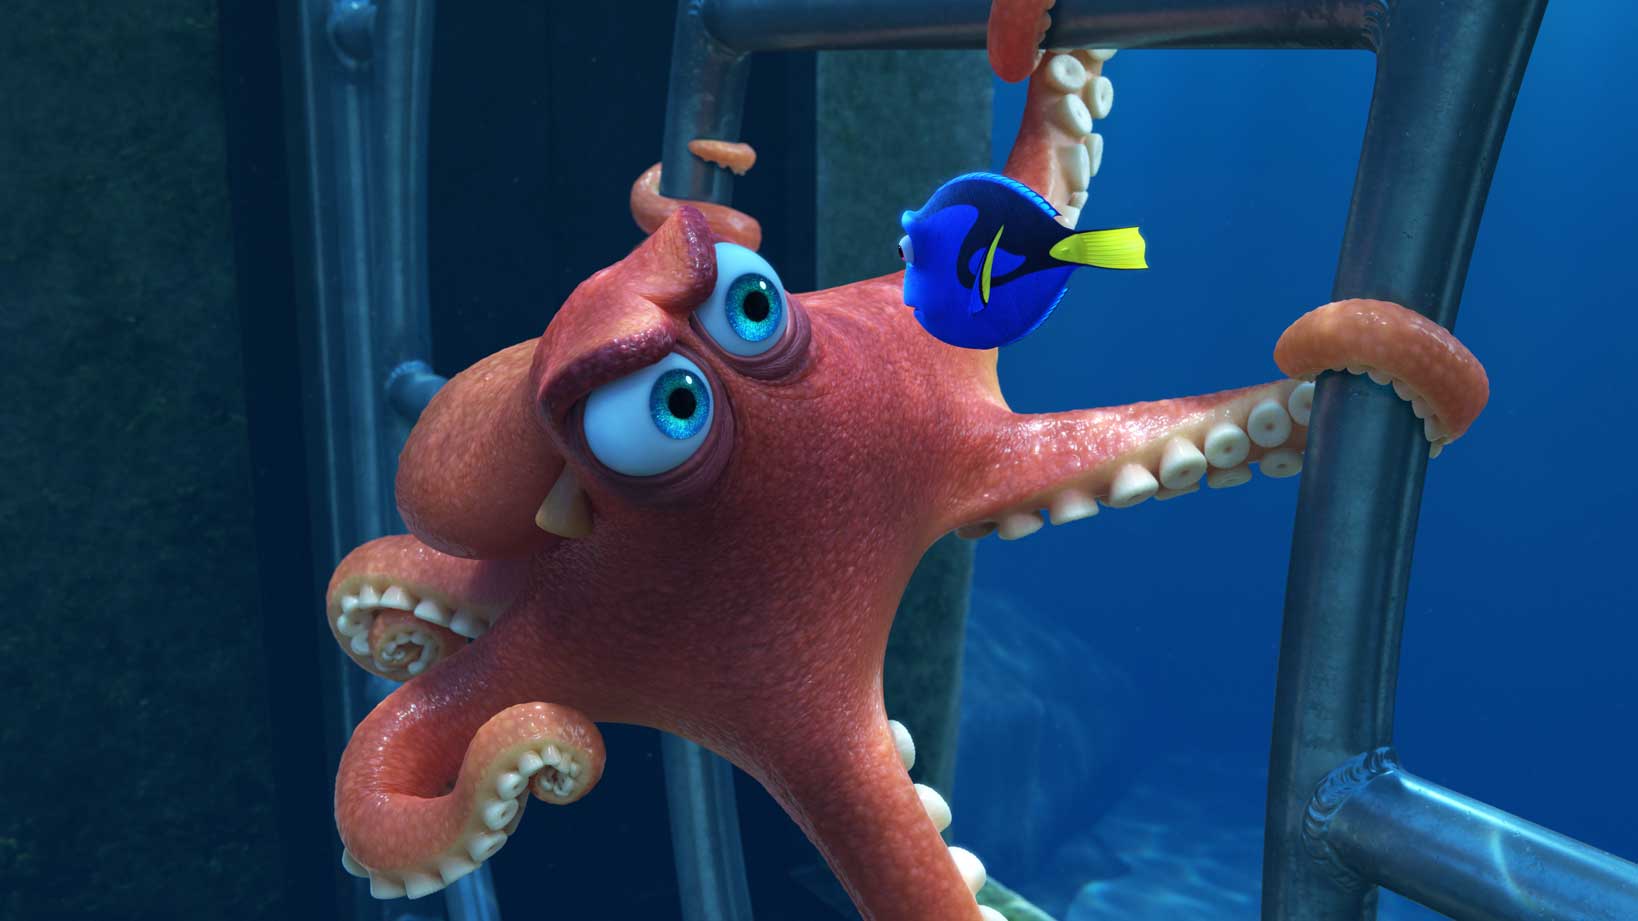 《海底奇兵 2》（Finding Dory）6 月在美國上映，數星期來不斷破票房紀錄，目前已是美國最高票房的 Pixar 動畫，截至現時（7 月 12 日），更是北美地區最高票房的動畫第 2 位，僅次於《史力加 2》，這個紀錄相信亦好快就破（全球最賣座動畫就當然係「Let It Go」《魔雪奇緣》拋離）。話題性之高，很難不買飛入場好奇一下，如果票房不是足夠的理由，以下還有 9 個小資料，畀大家知道《海底奇兵 2》有幾吸引。